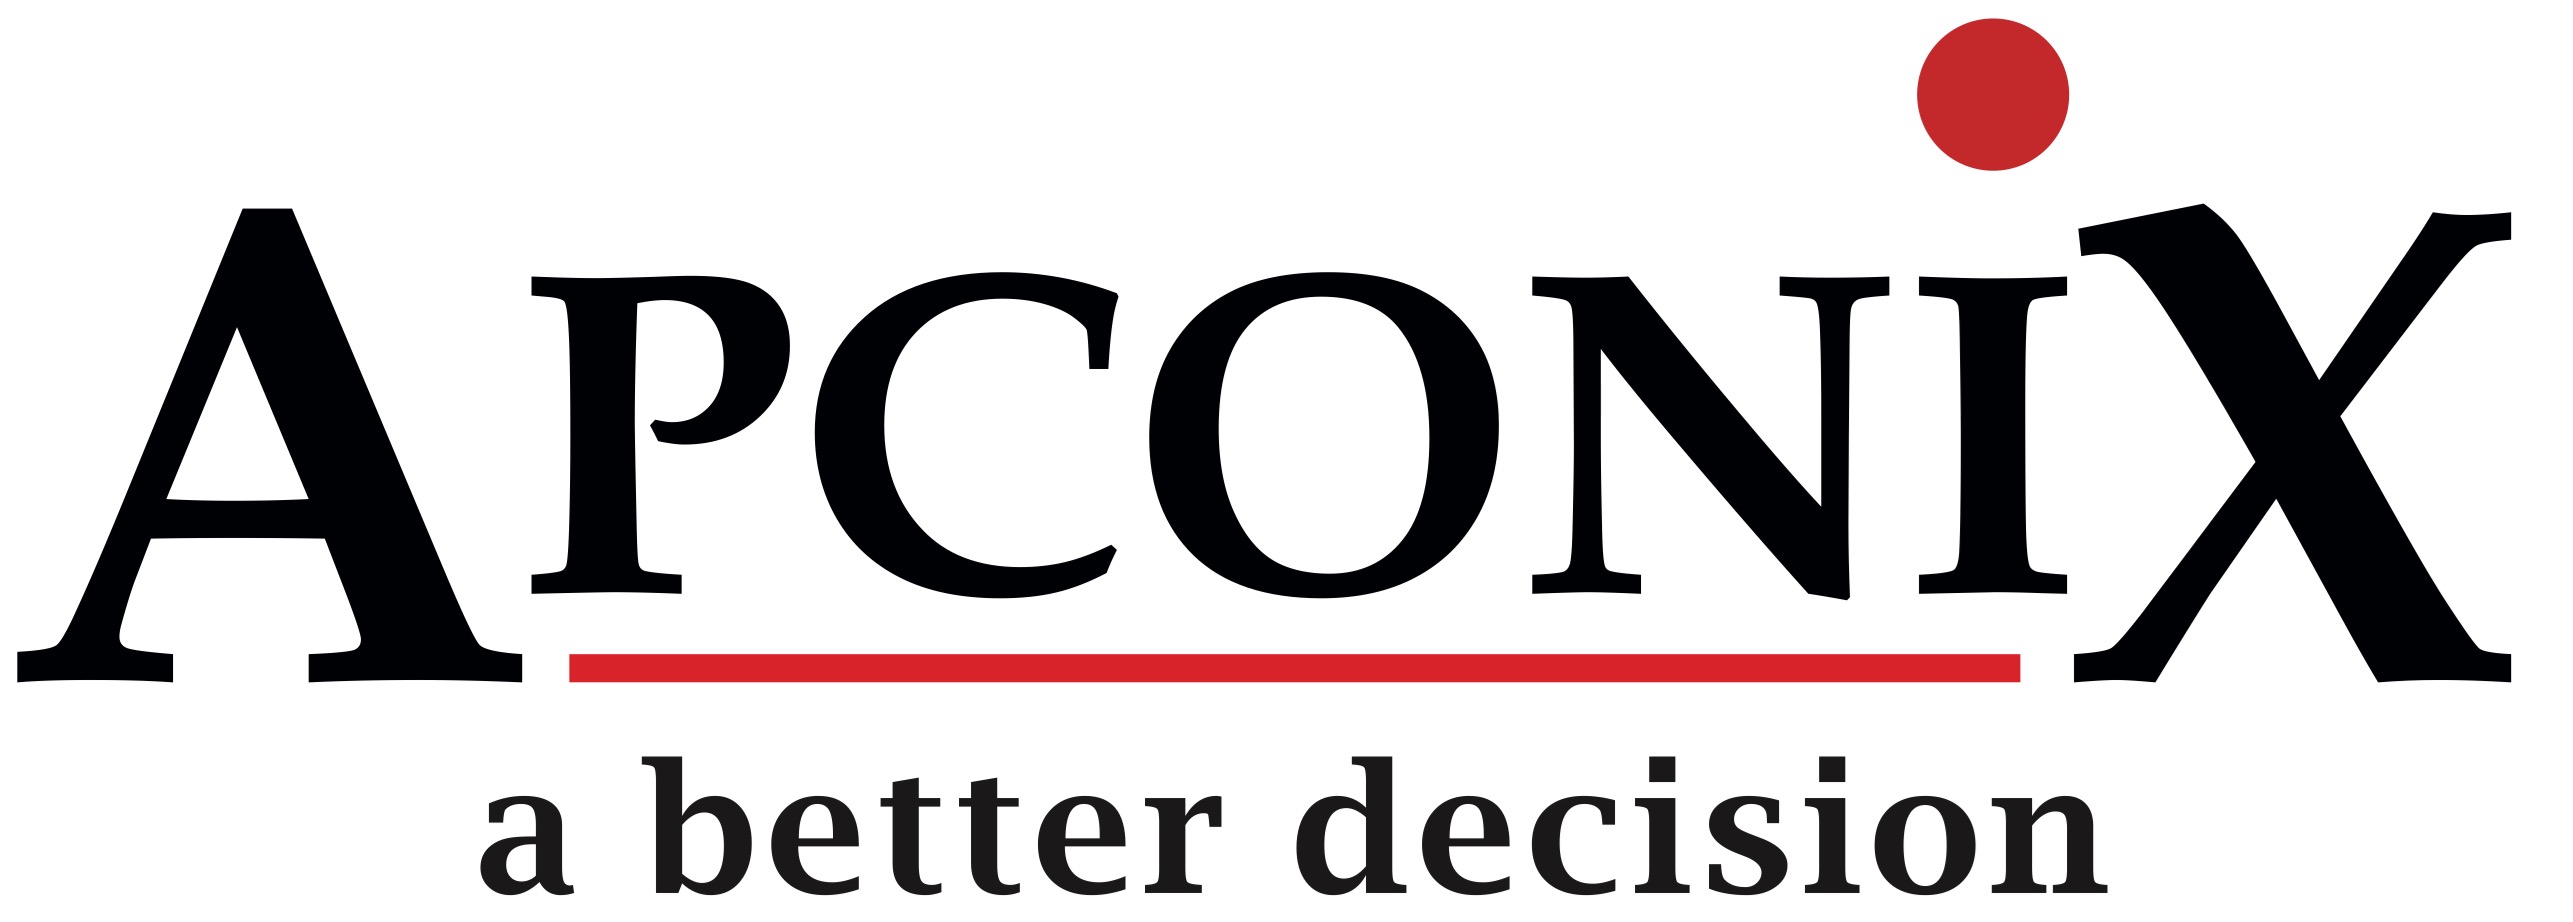 ApconiX logo